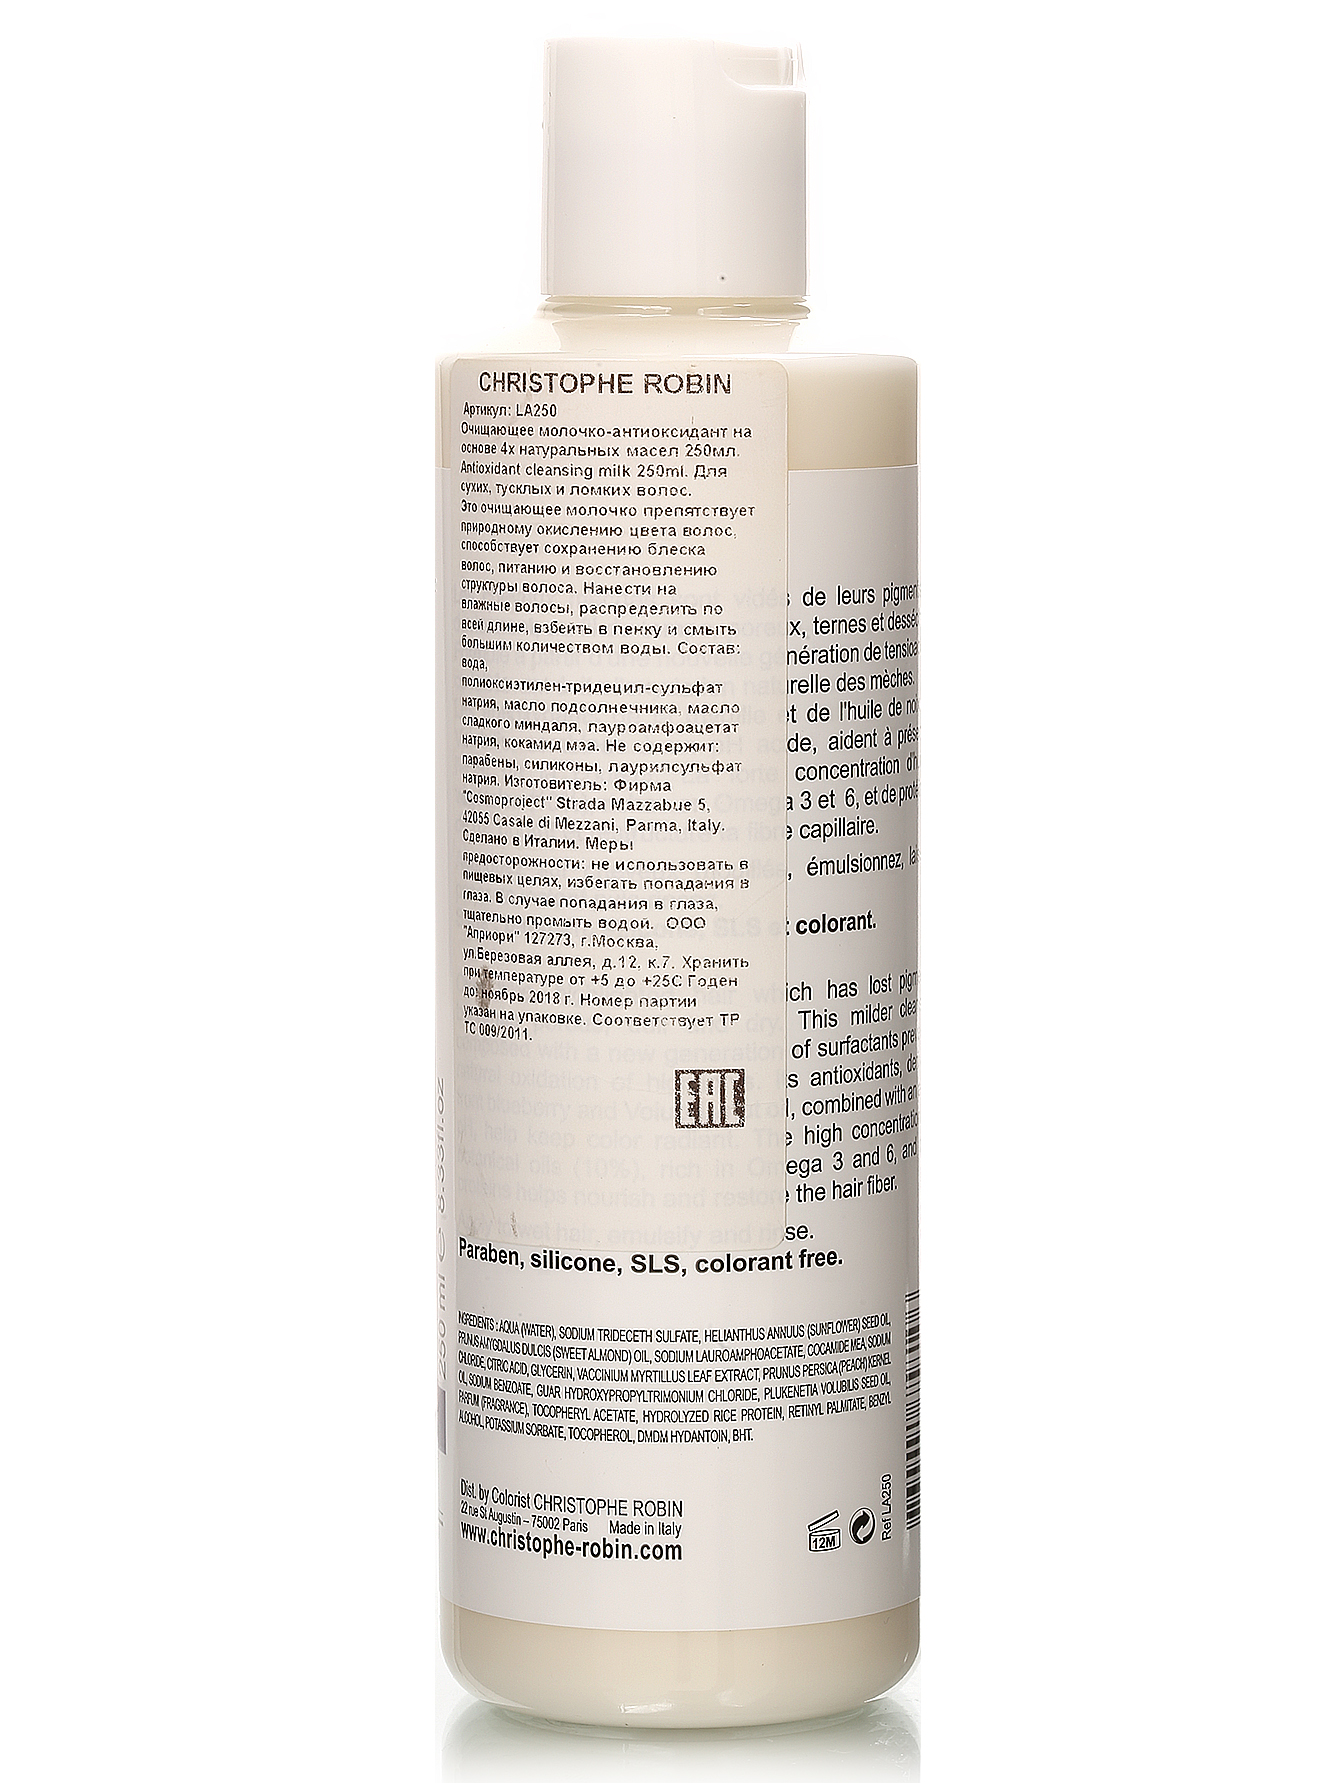  Очищающее молочко-антиоксидант - Hair Care, 250ml - Модель Верх-Низ